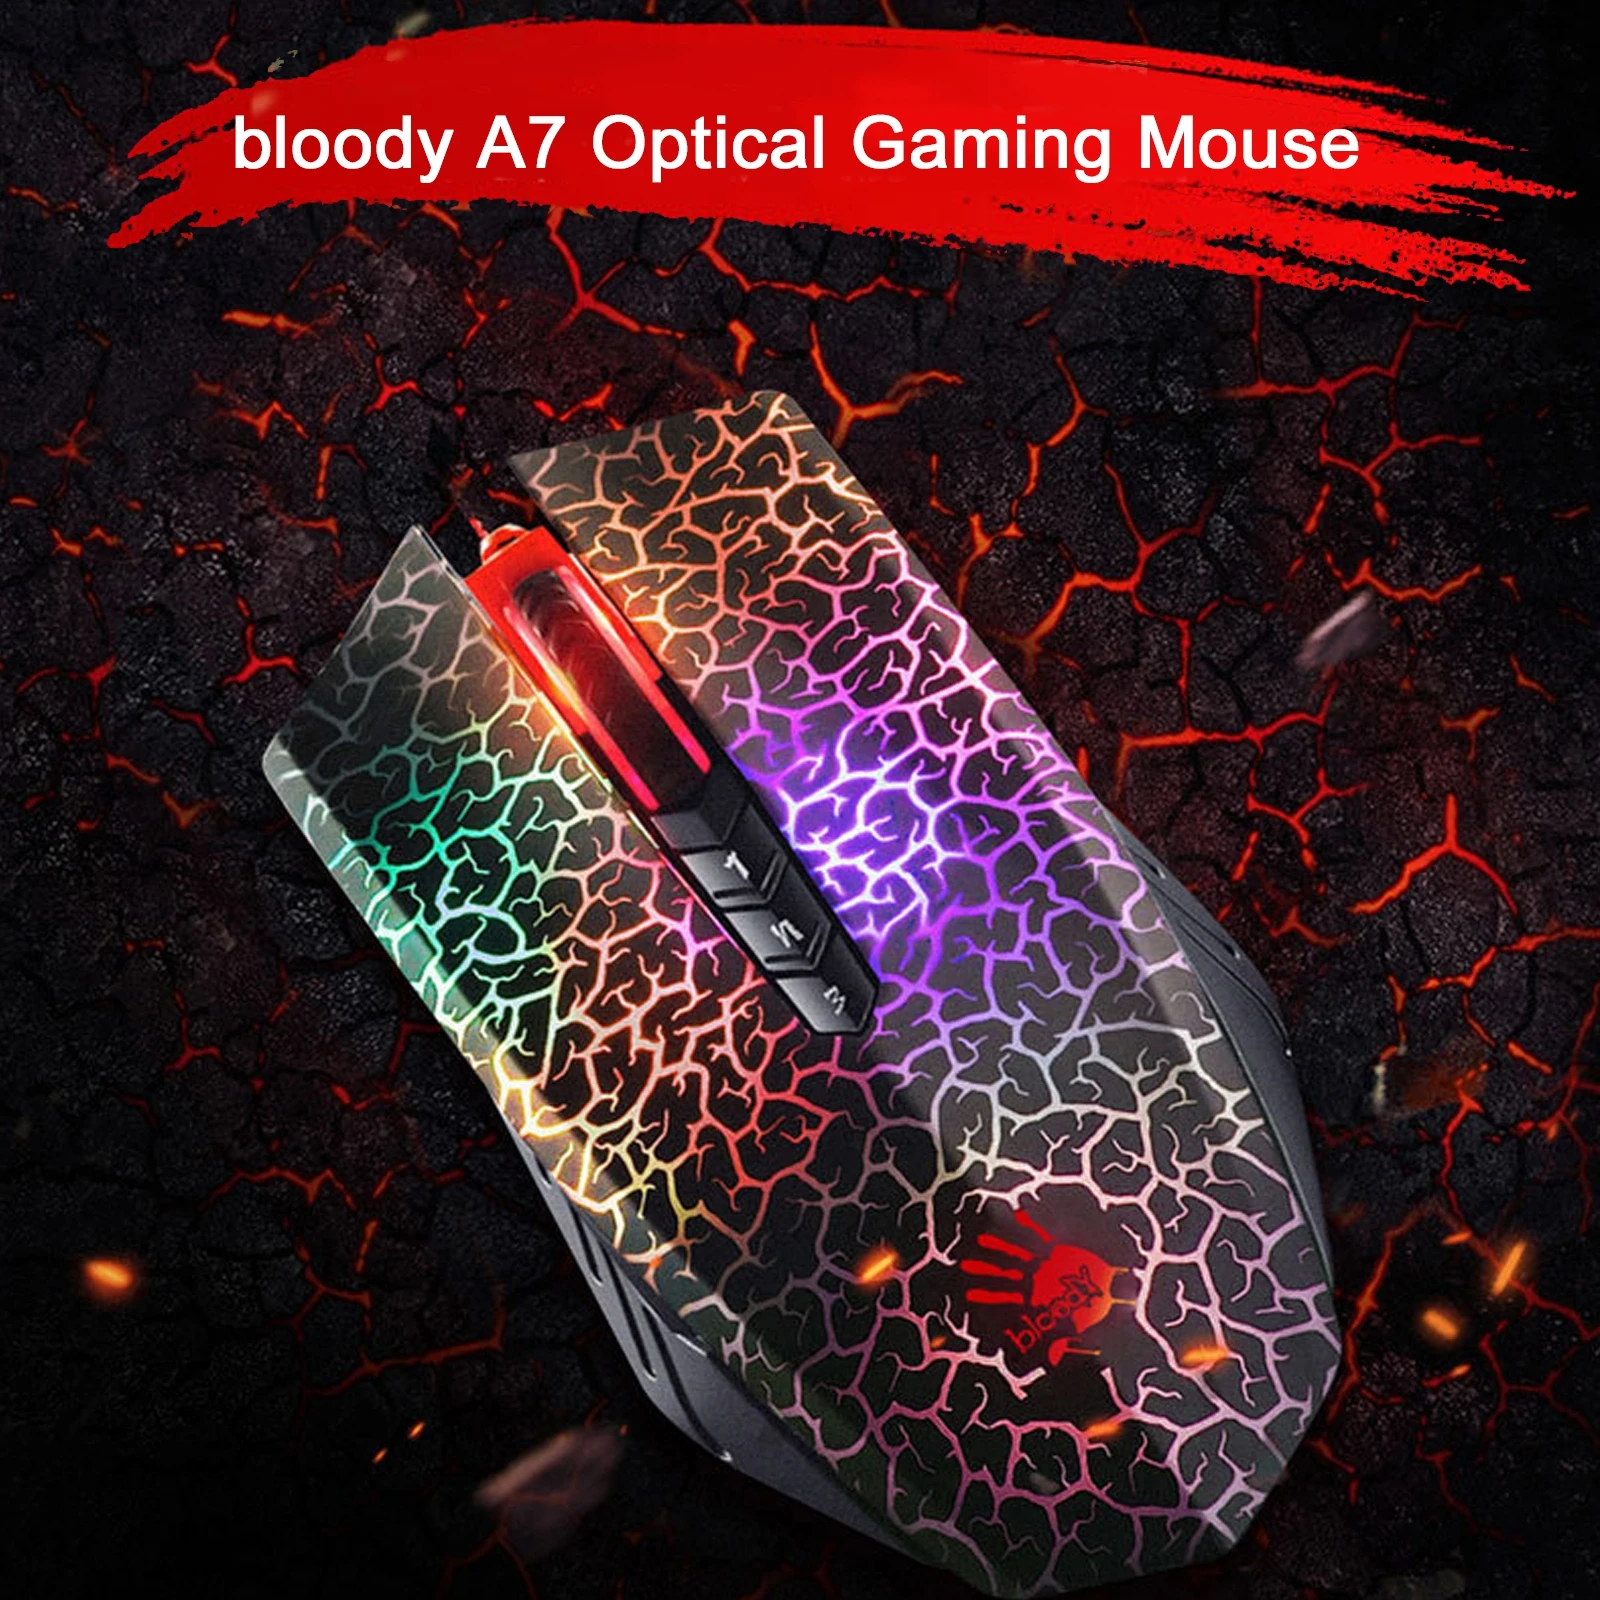 サイトです ゲーム用マウス Usb光学式 4色 呼吸用 Mice 単品購入用 Seueventonline Com Br